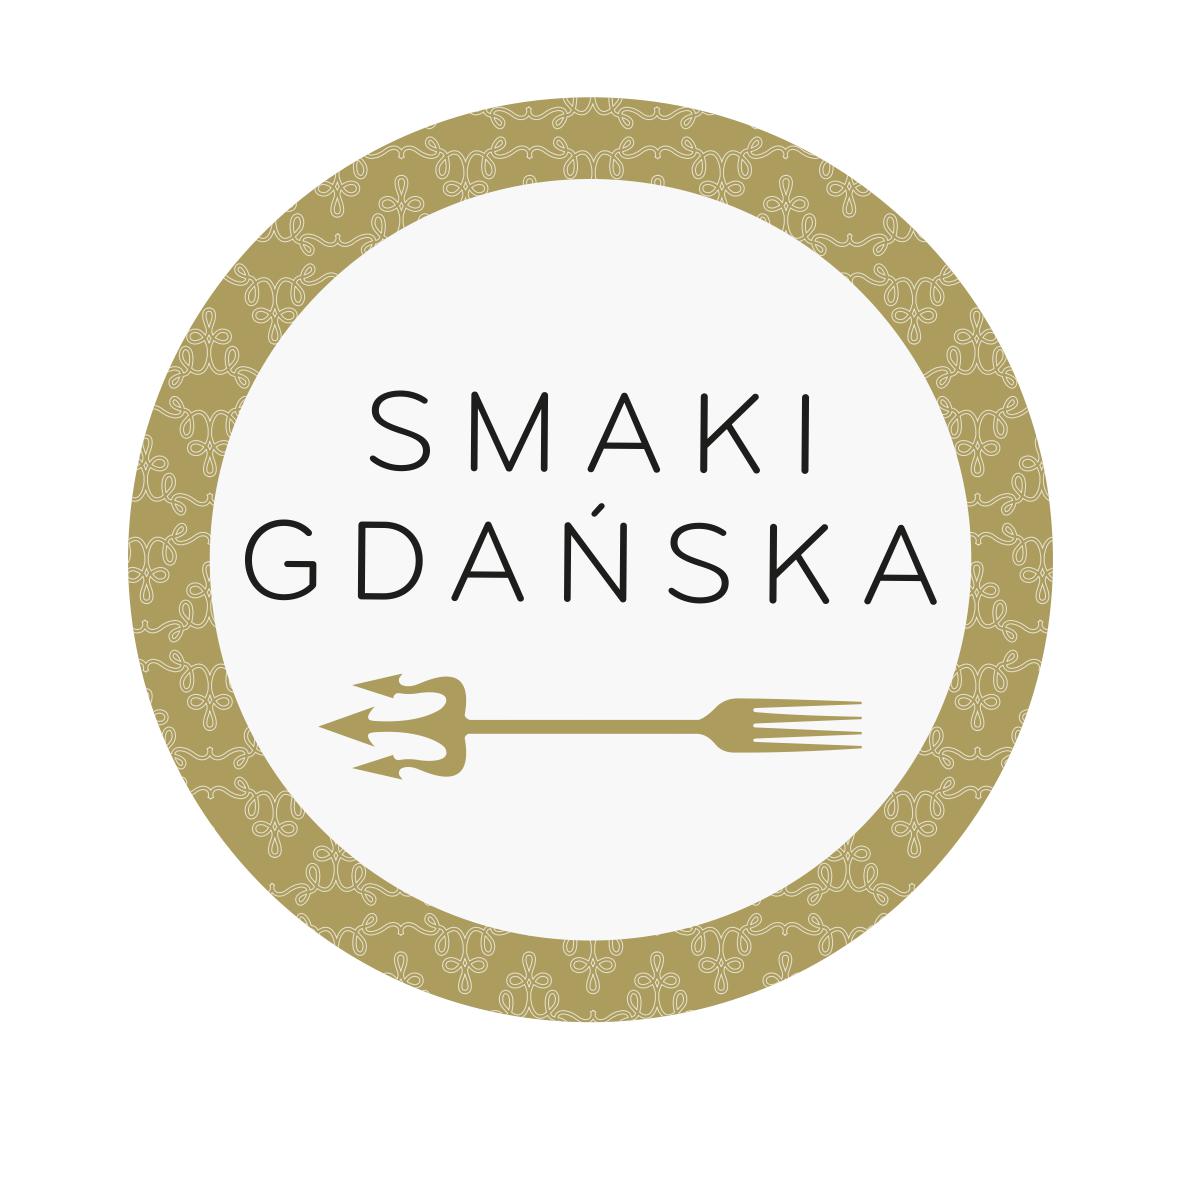 Smaki Gdańska - o projekcie - Więcej informacji